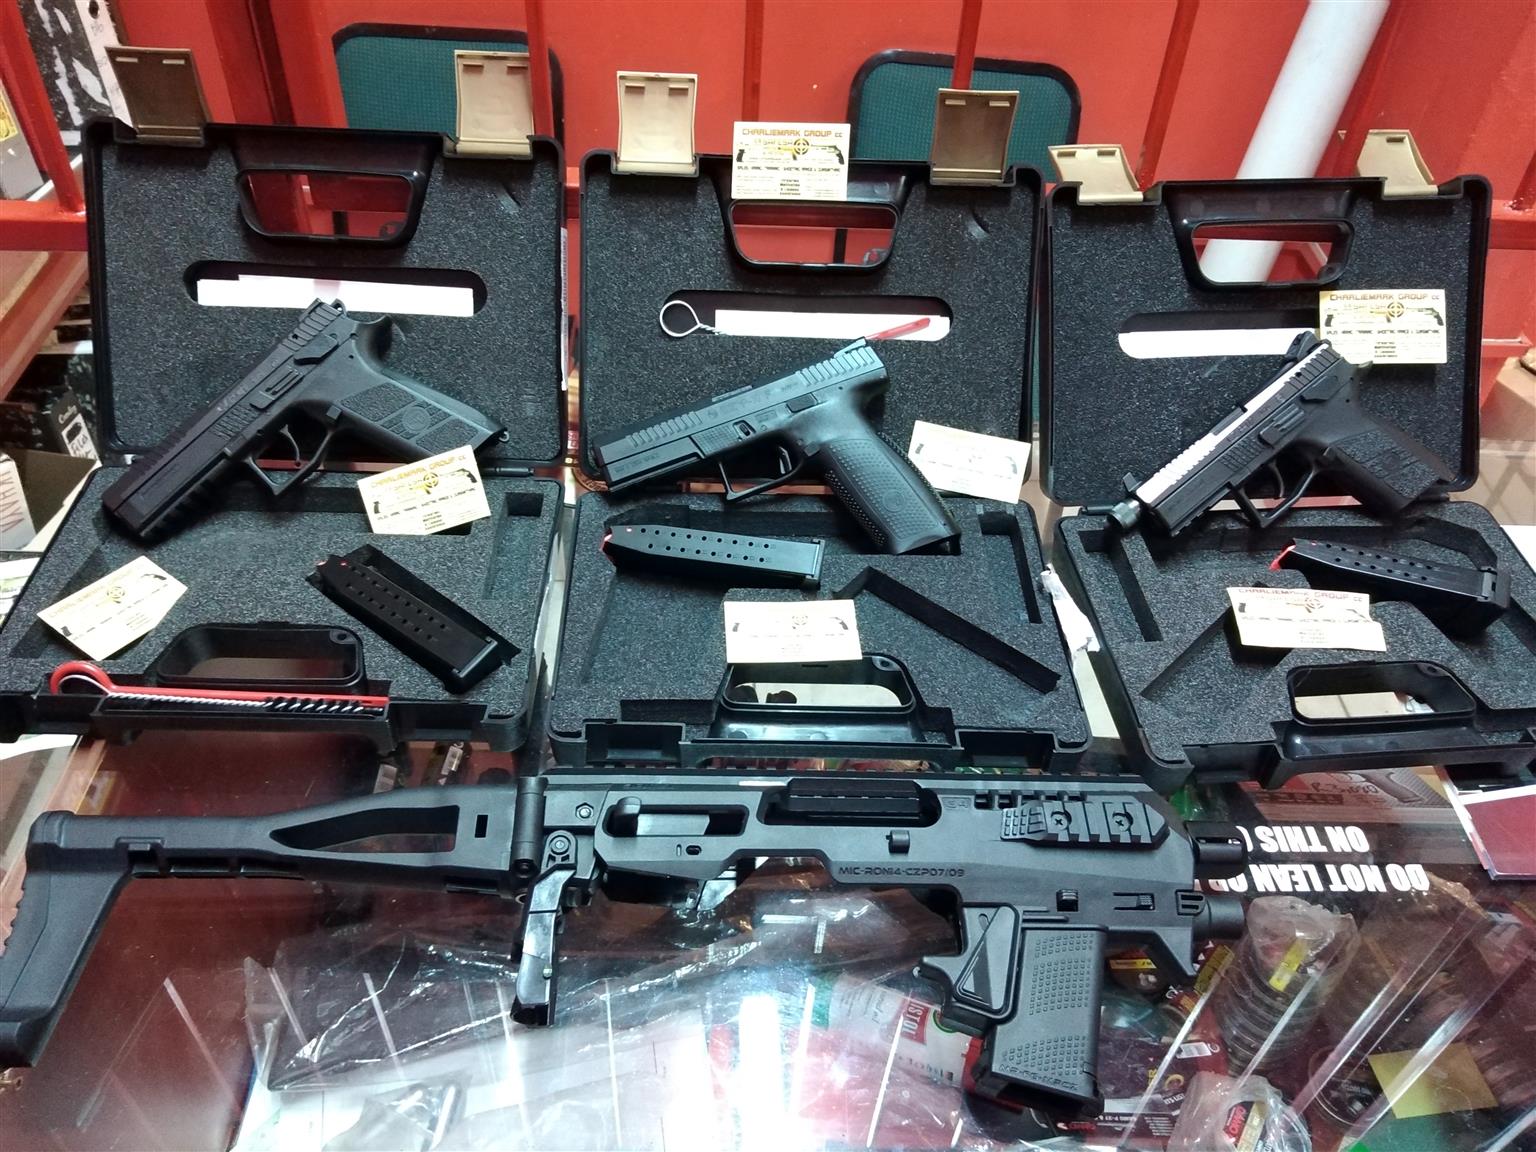 Shooting Range and GunShop For Sale